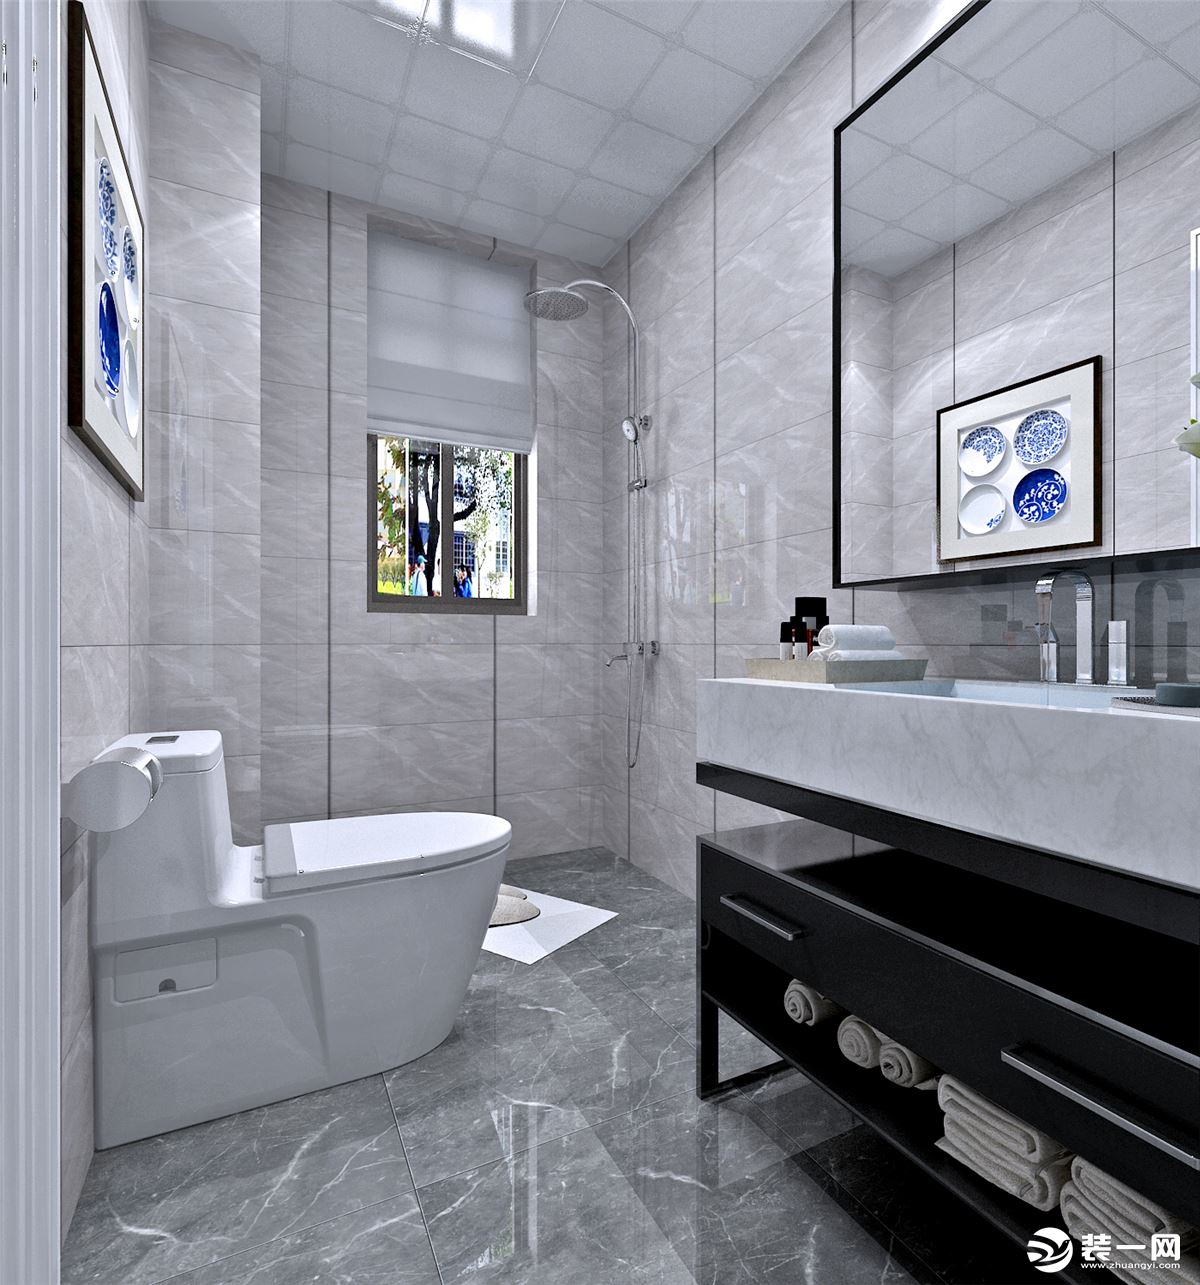 白色淡纹墙砖使卫生间更加明亮，不显压抑，同时在功能设计上也满足更多的利用空间。